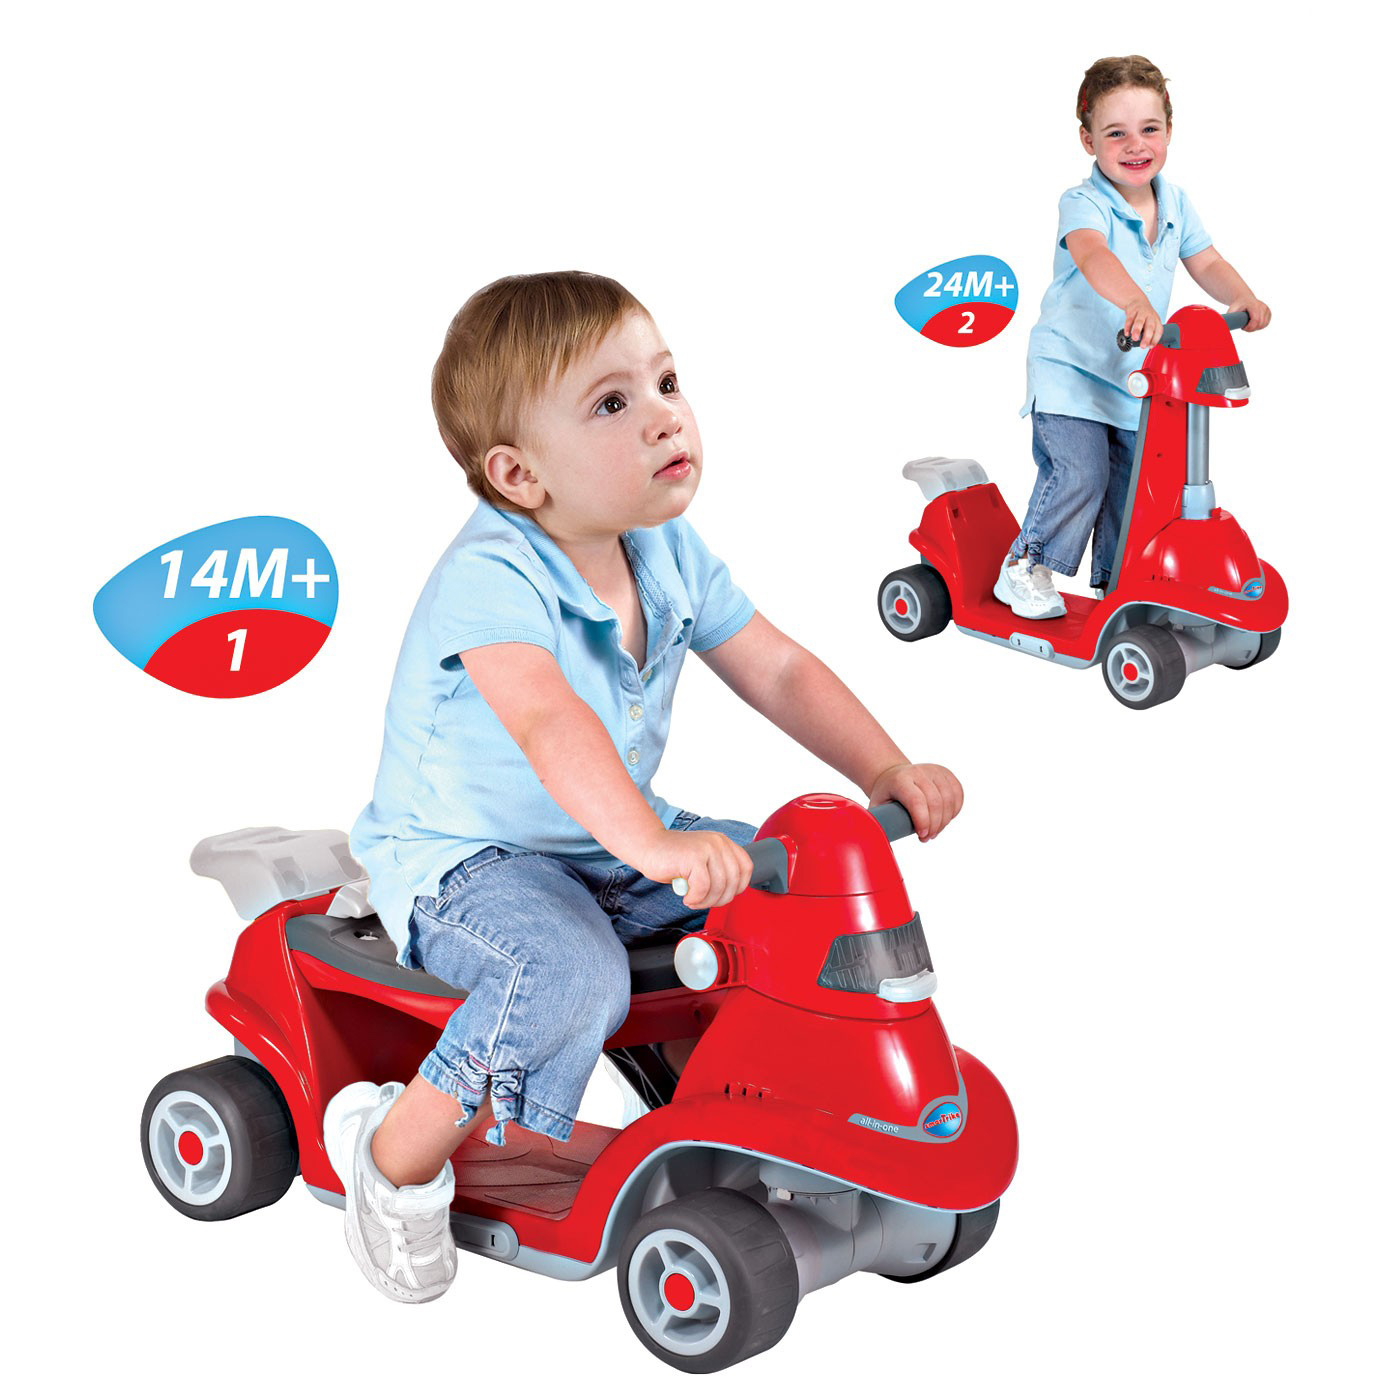 Каталка-самокат Smart Trike 2 в 1 All in One – это долгожданный подарок для ребенка, который с удовольствием вместе с родителями будет познавать тайны превращений.